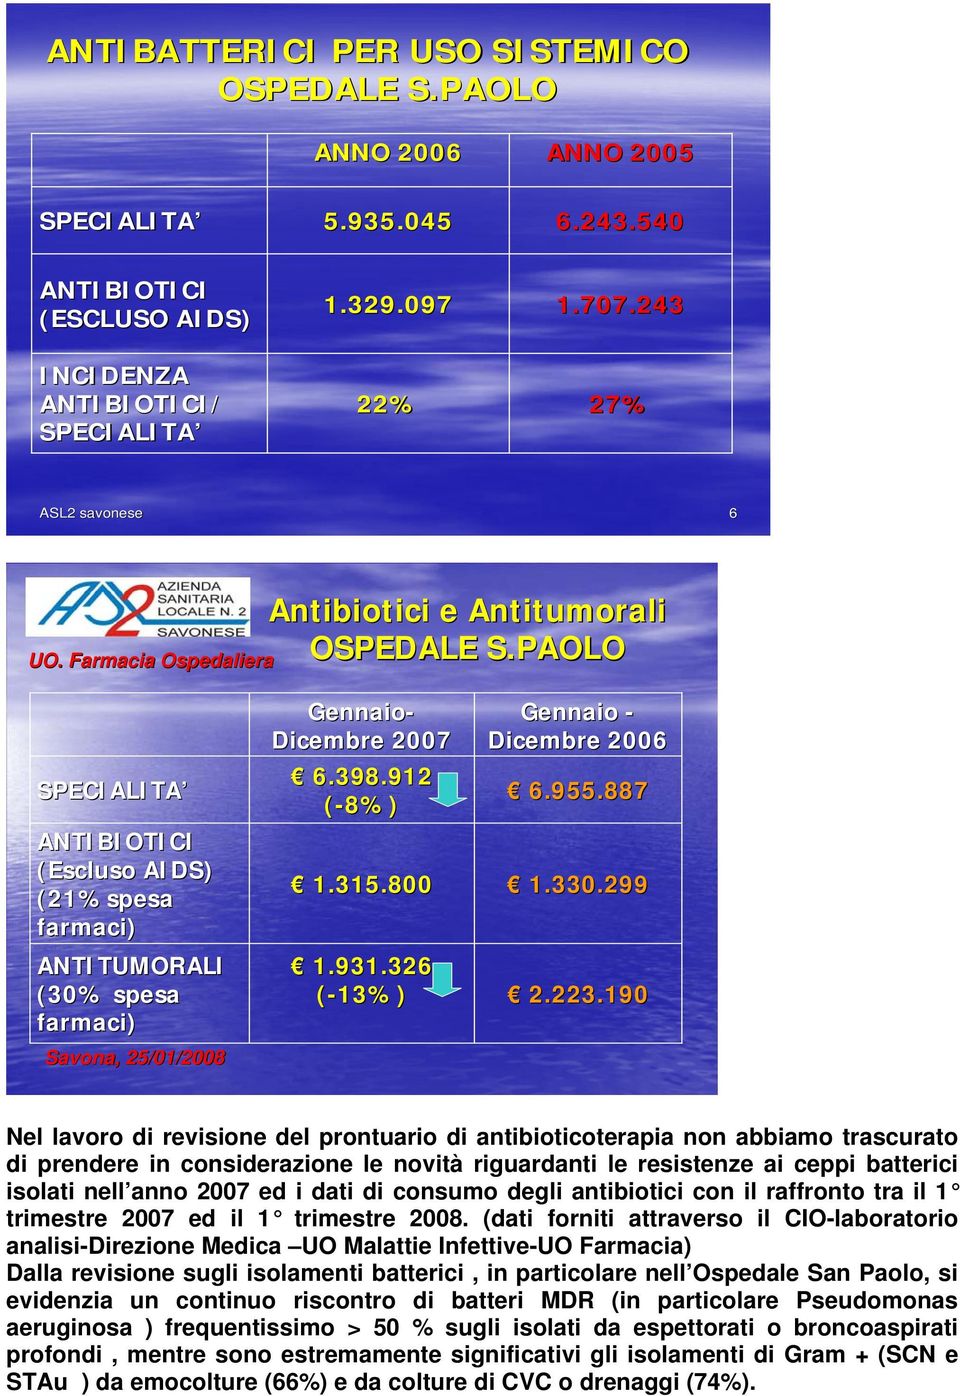 PAOLO SPECIALITA ANTIBIOTICI (Escluso AIDS) (21%spesa farmaci) ANTITUMORALI (30% spesa farmaci) Savona, 25/01/2008 Gennaio- Dicembre 2007 6.398.912 (-8%) 1.315.800 1.931.